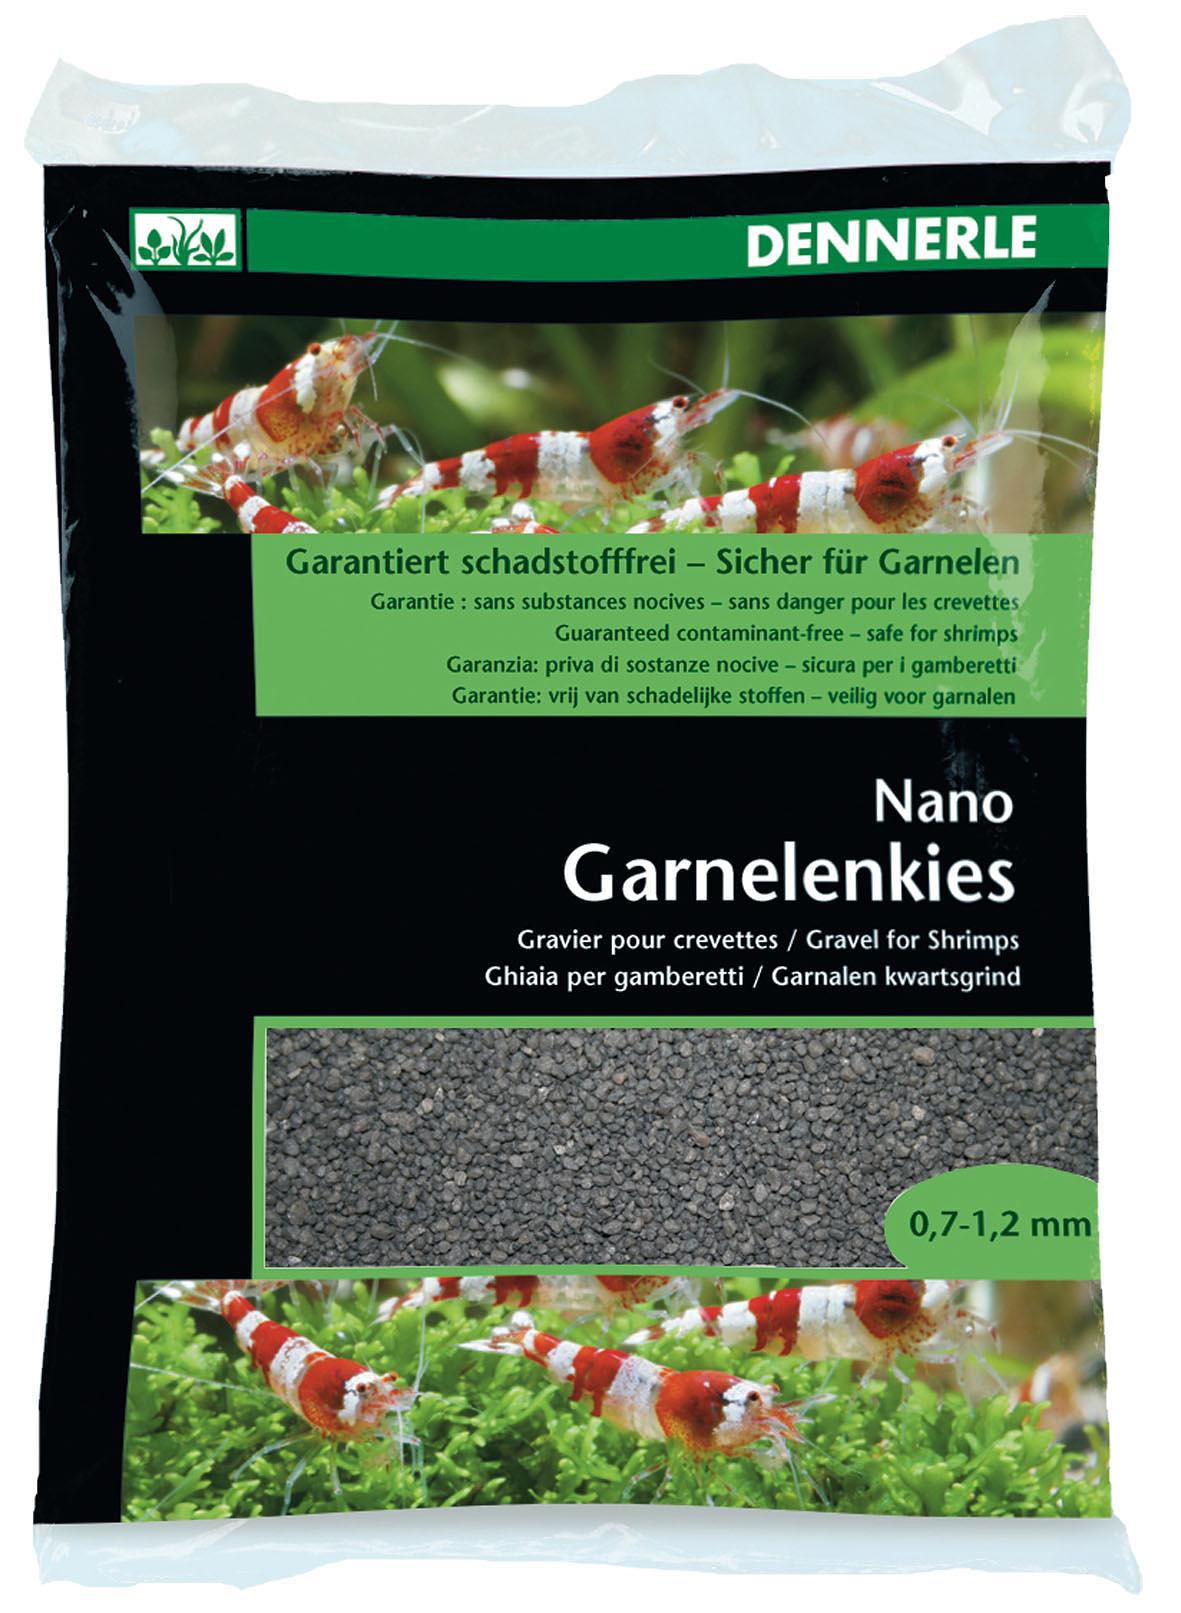 Dennerle Nano Garnelenkies 2 Kg in schwarz oder braun